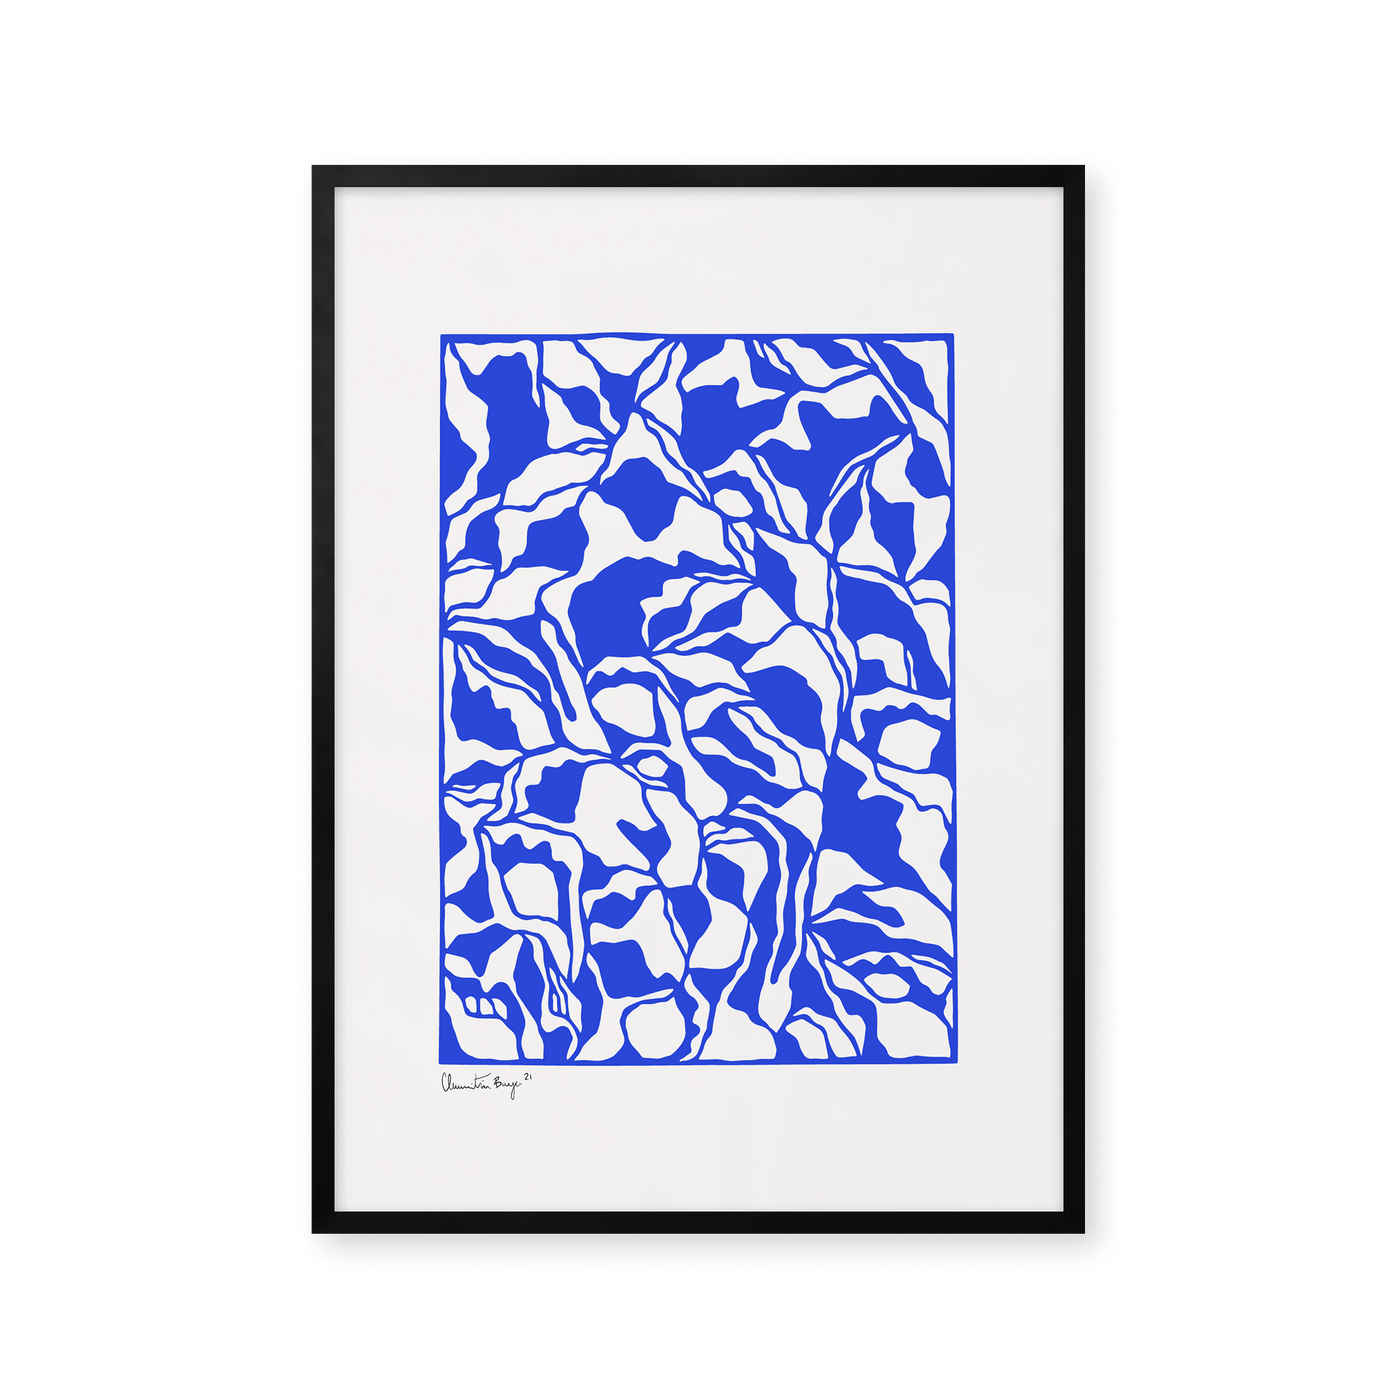 Papercut 03 - Blue